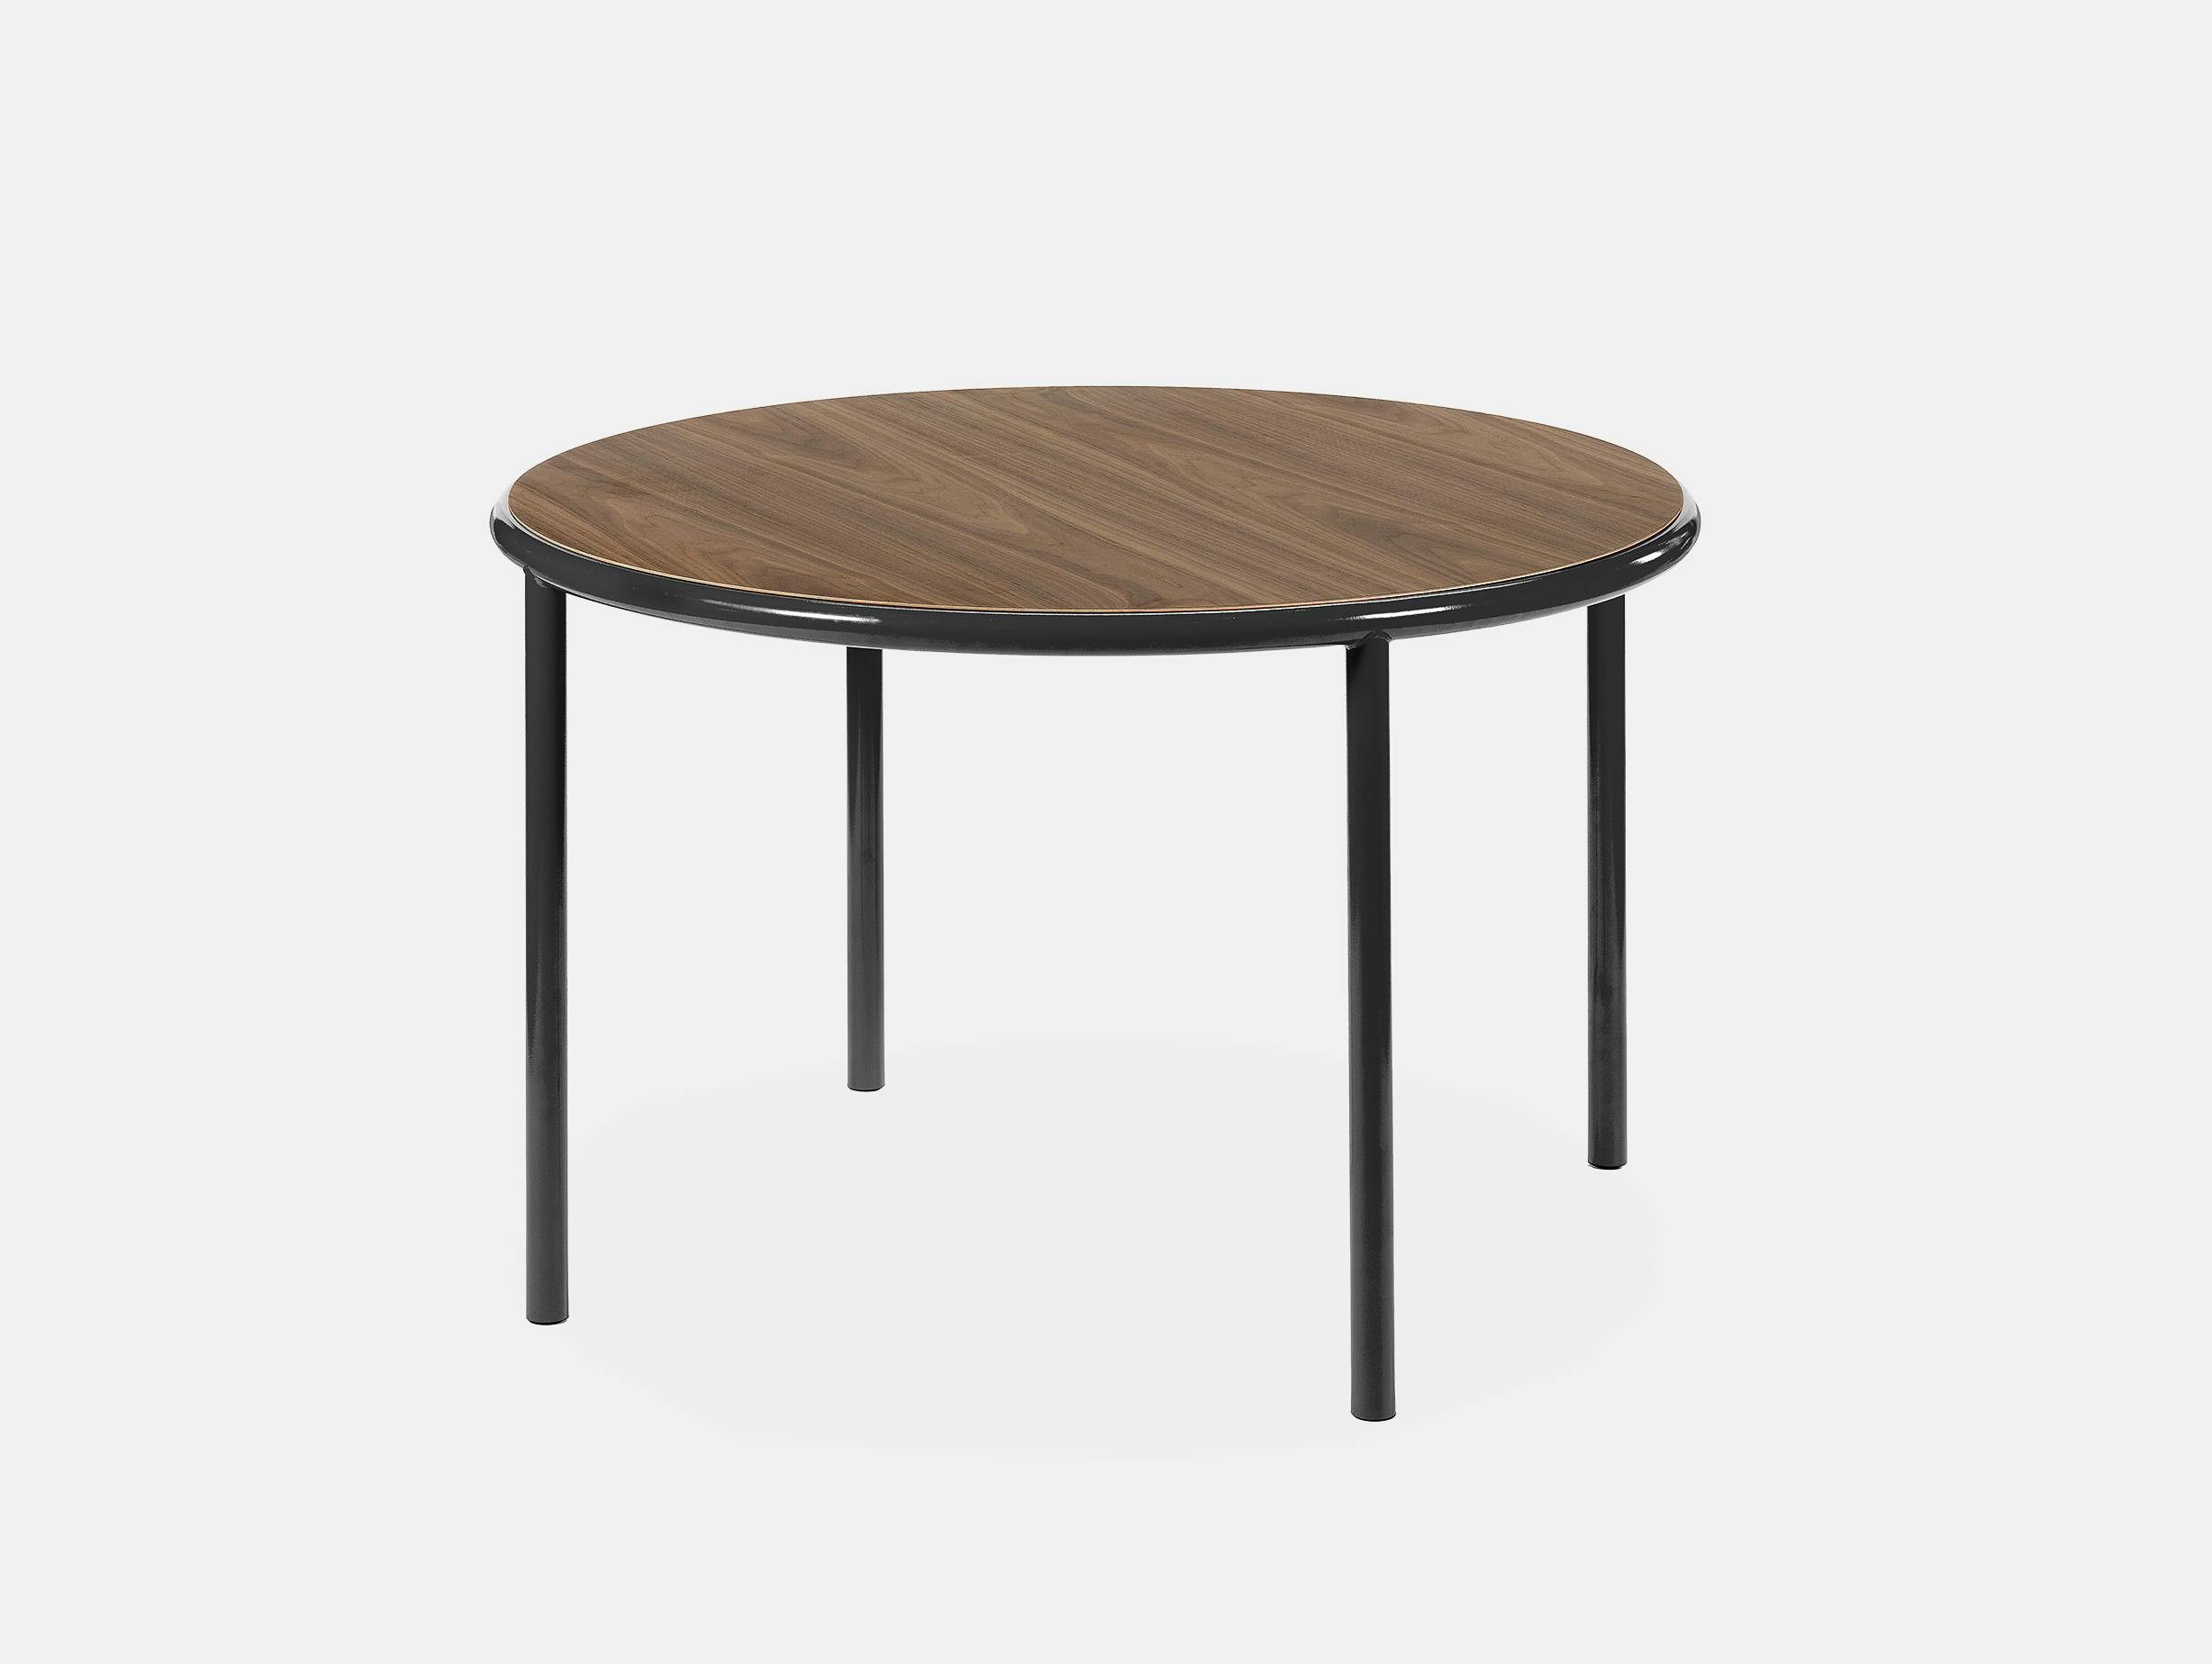 Muller van severen wooden table small round black walnut